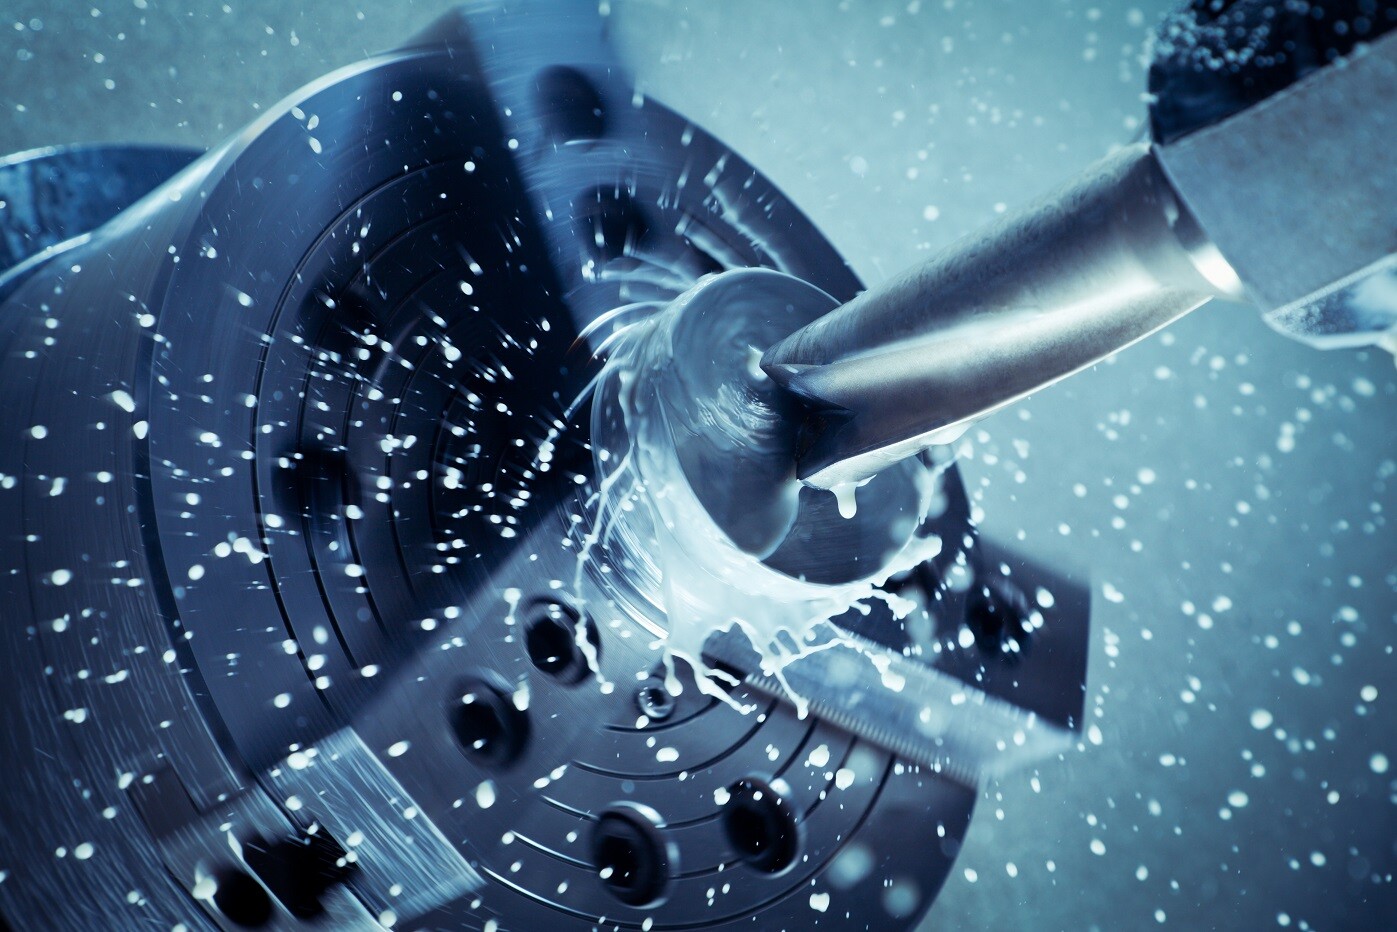 มหกรรมเทคโนโลยีเครื่องจักรกลโลหการอันดับหนึ่งของอาเซียน ภายใต้แนวคิด "โลหการอัจฉริยะ" (Smart Metalworking)